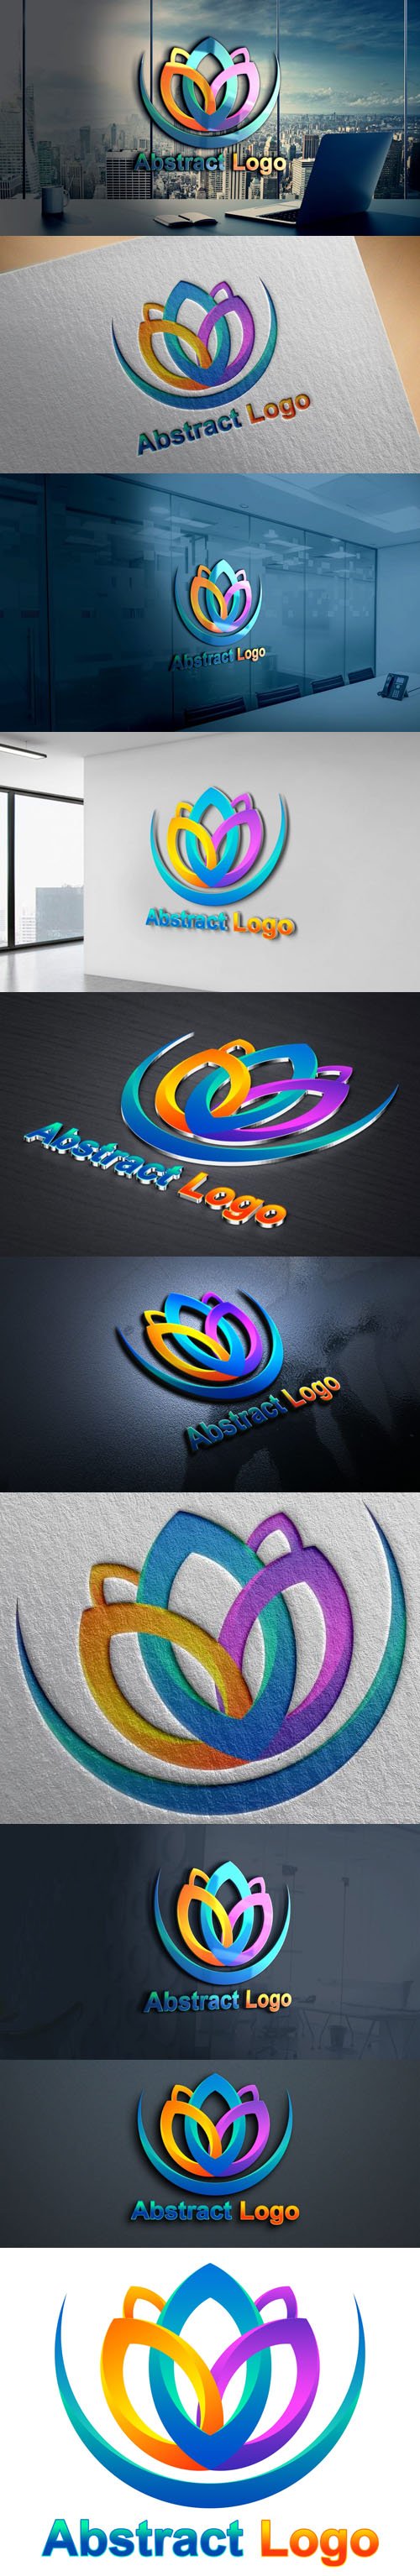 Abstract Logo Design PSD Template